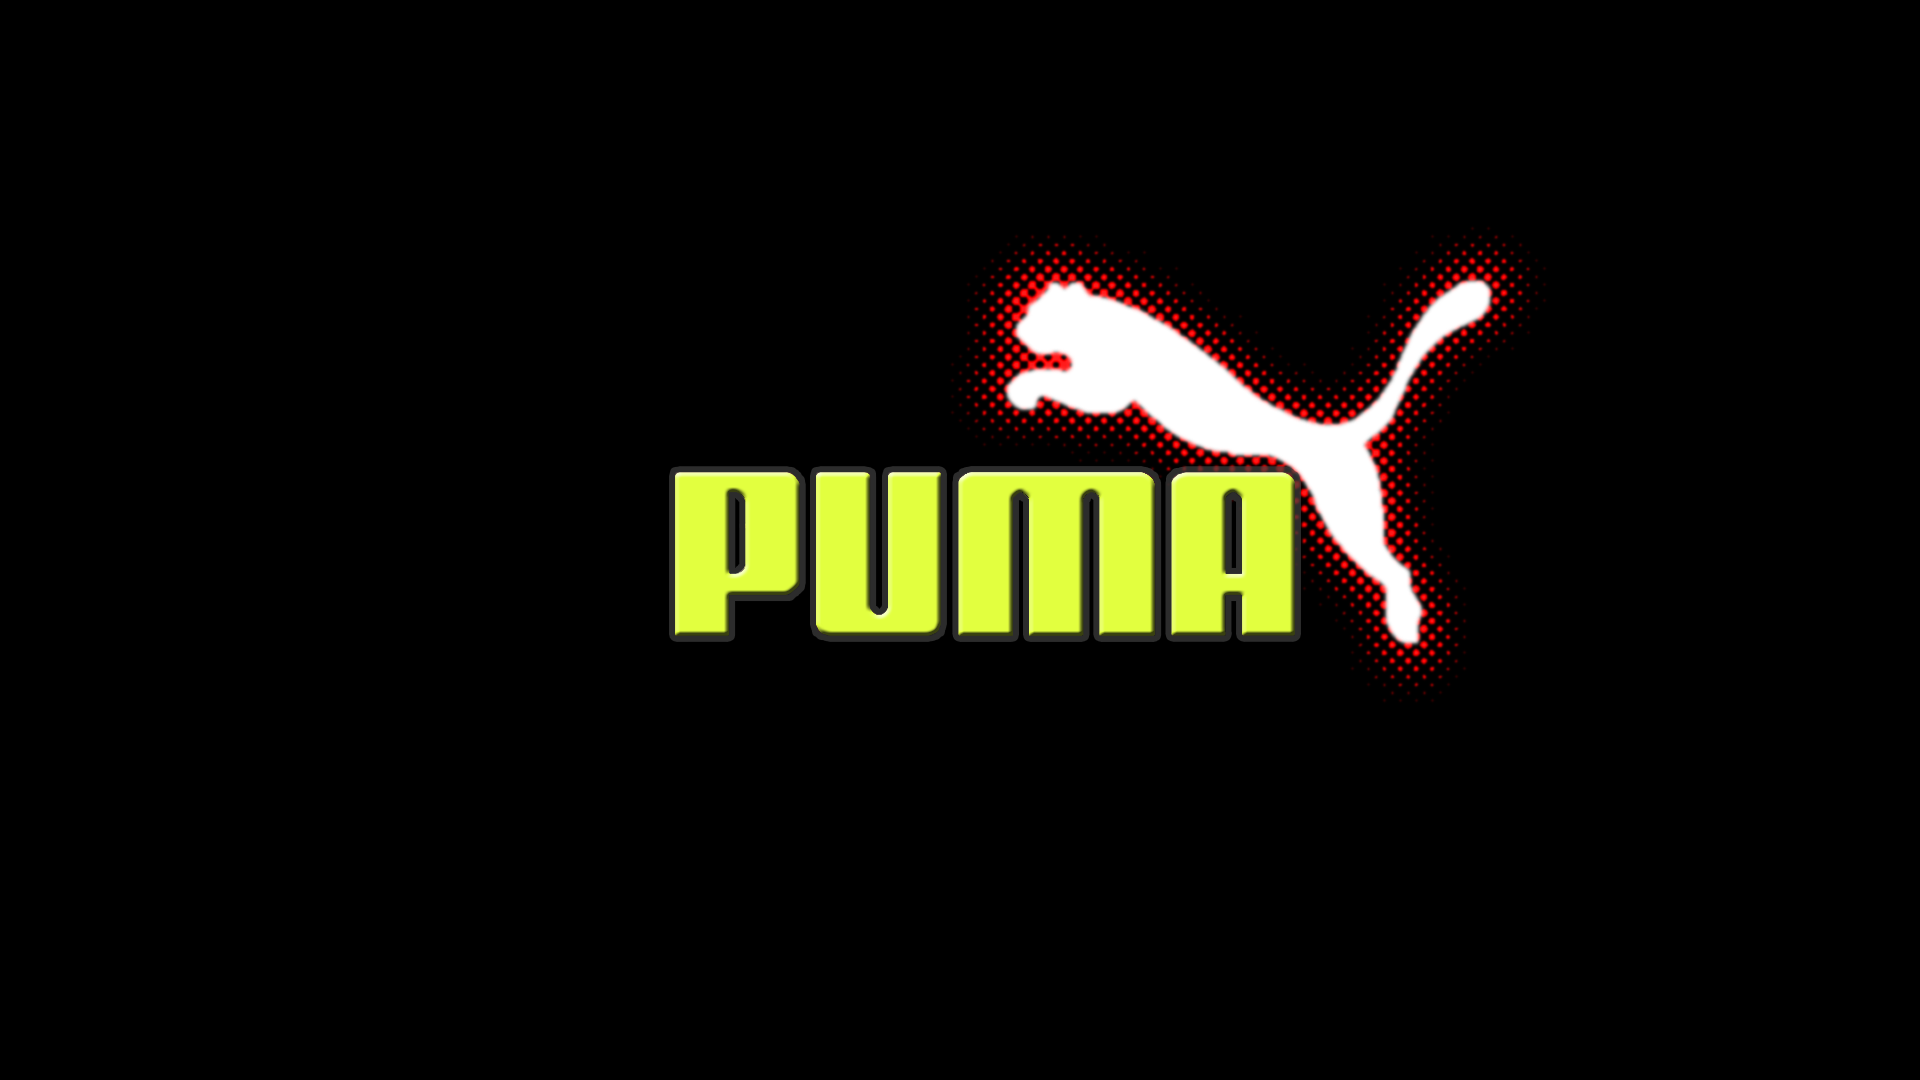 logo puma wallpaper hd